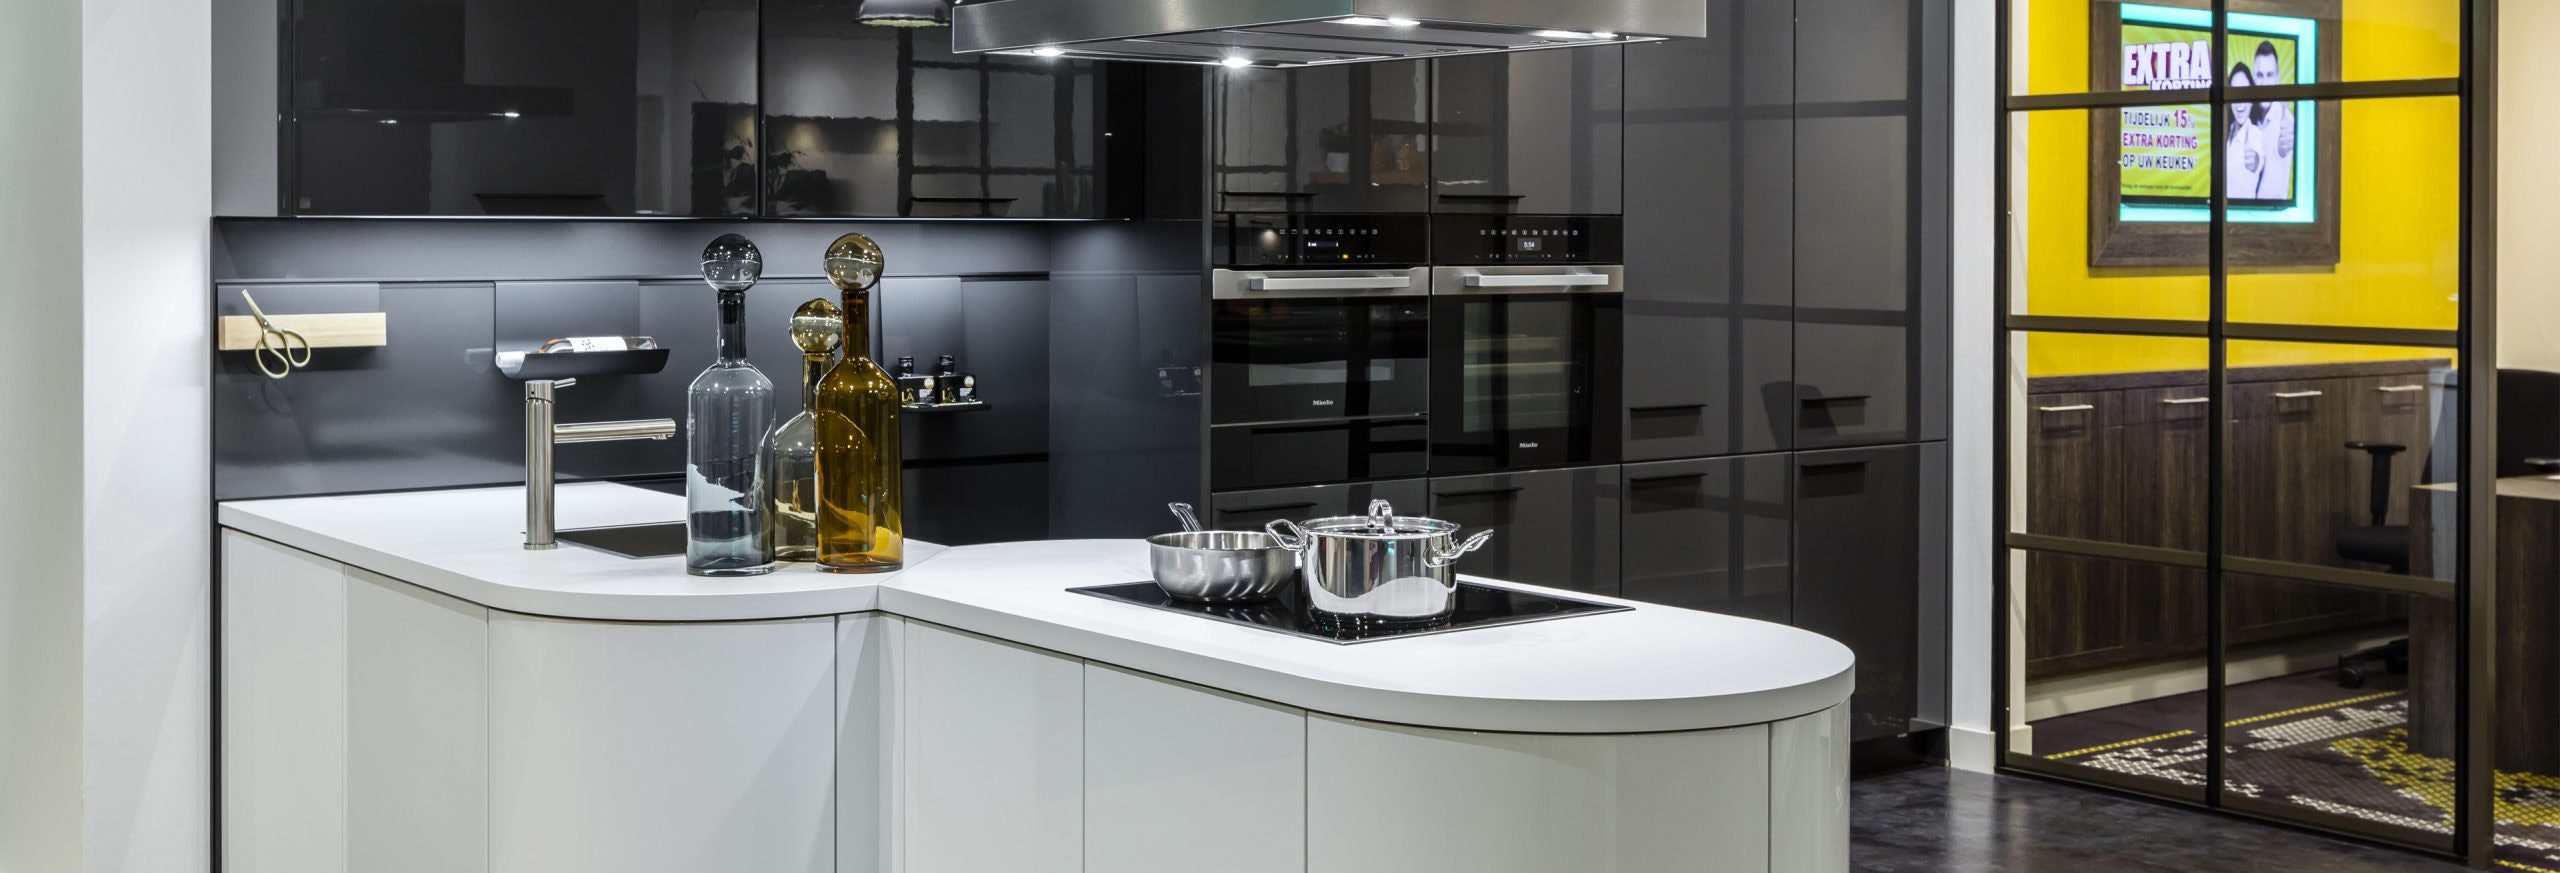 Keuken 1400236 - Lavazwarte design hoogglans keuken met wit kookeiland en spoeleiland